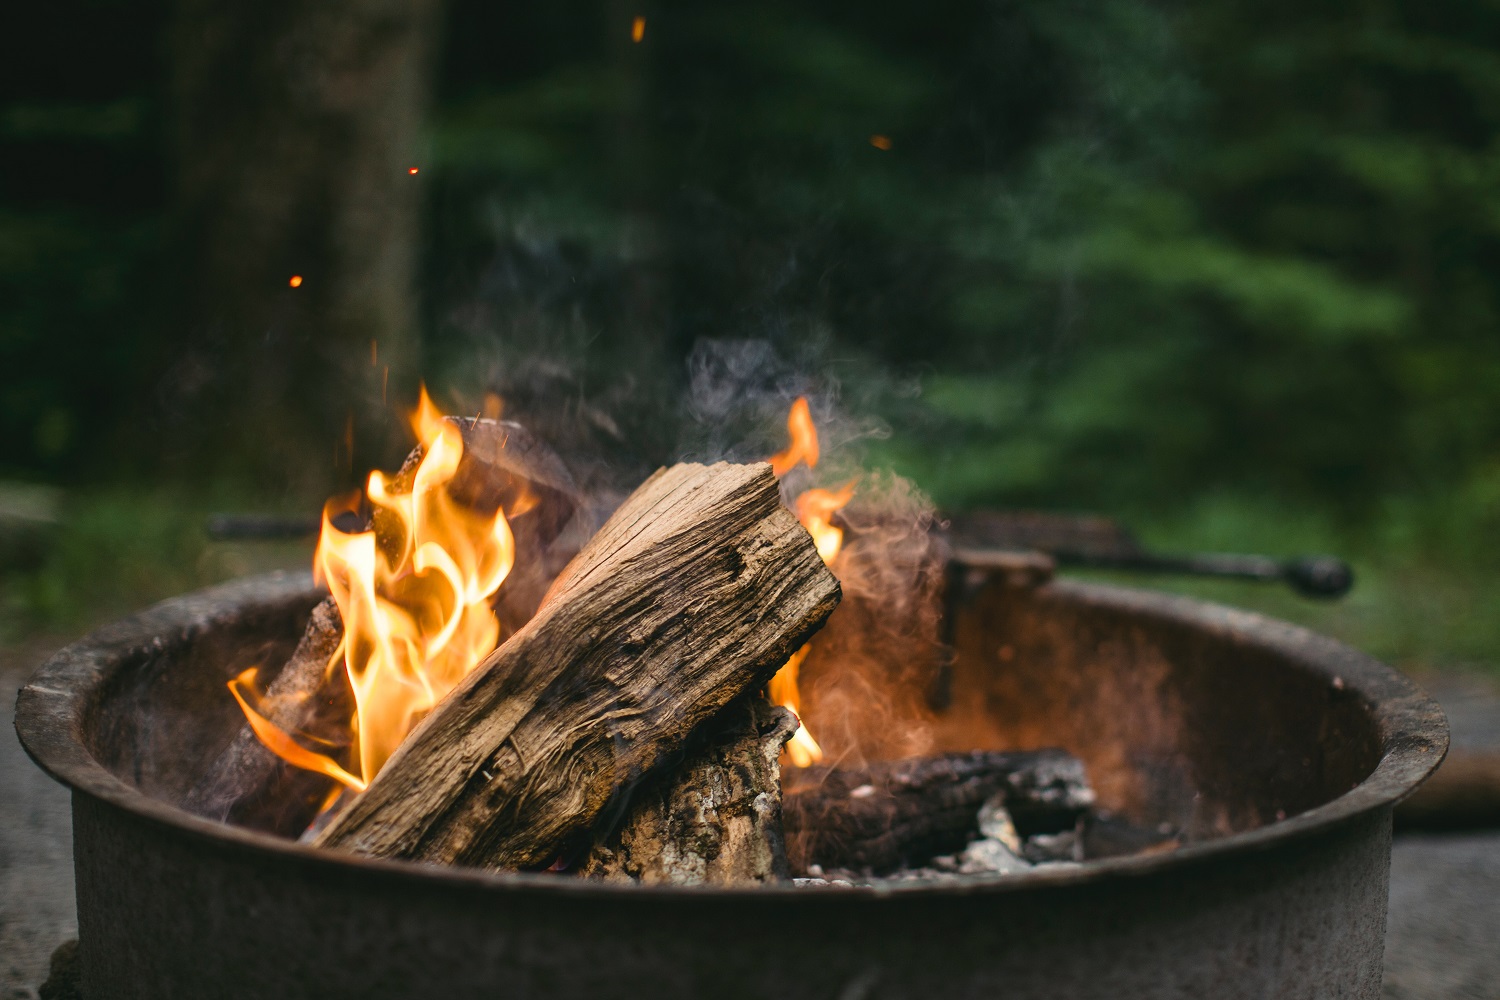 【初心者向け】焚き火のやり方をステップで紹介。準備するものや薪の選び方